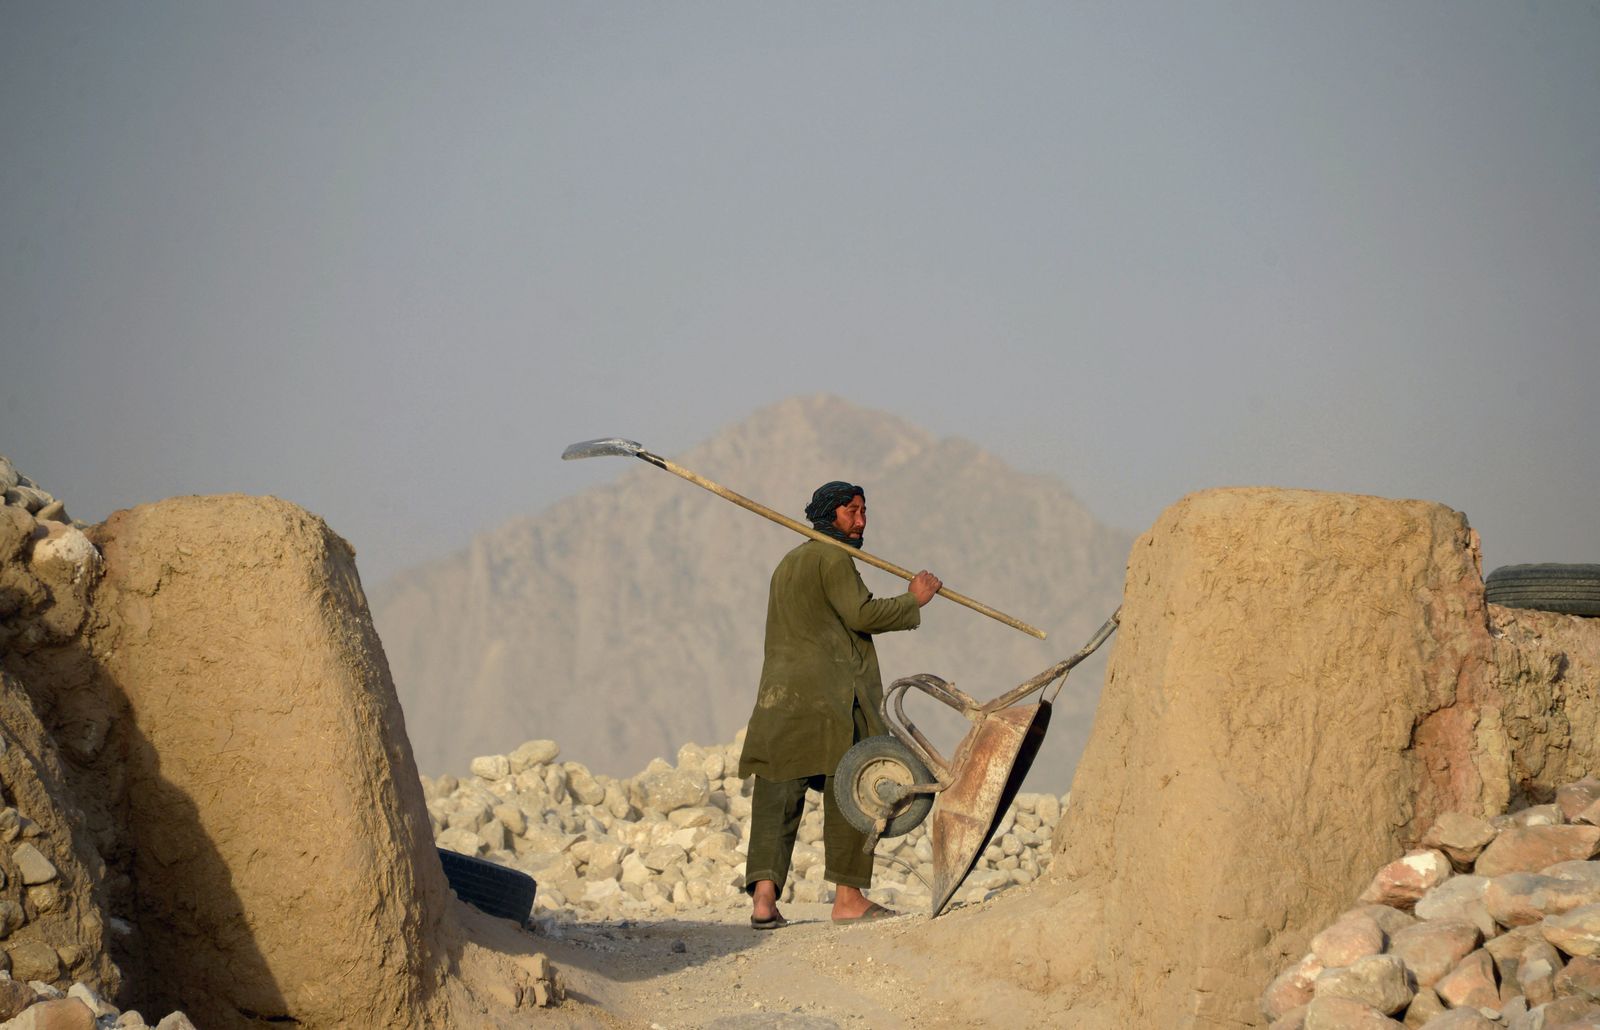 عامل أفغاني يعمل في مصنع طباشير على أطراف مدينة مزار شريف في أفغانستان 20 يونيو 2018 - AFP